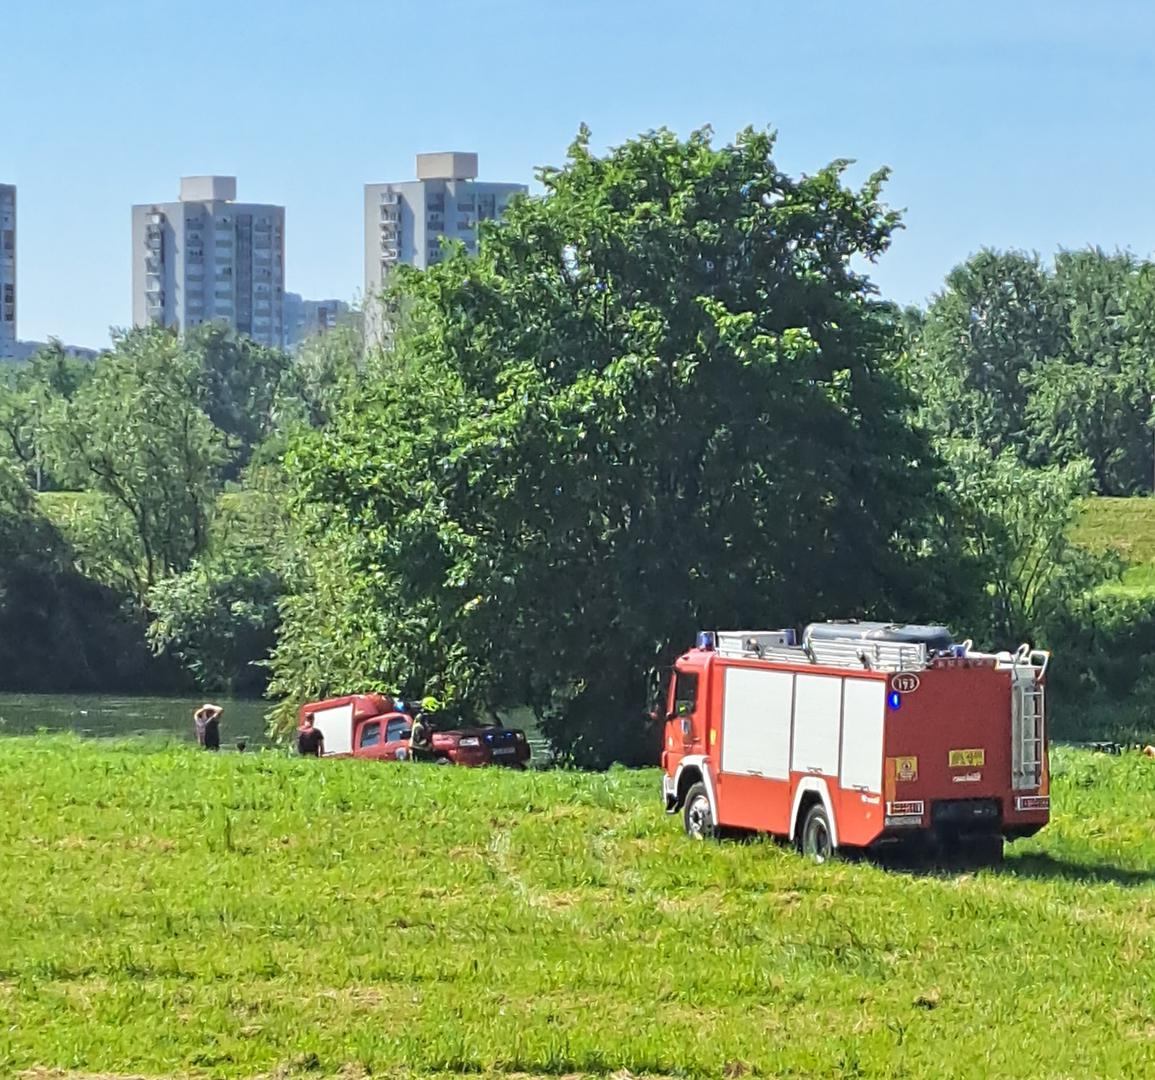 Vatrogasci su jutros iznenadili i zbunili šetače koji su sunčano nedjeljno prijepodne odlučili iskoristiti za aktivnosti na savskom nasipu u Zagrebu